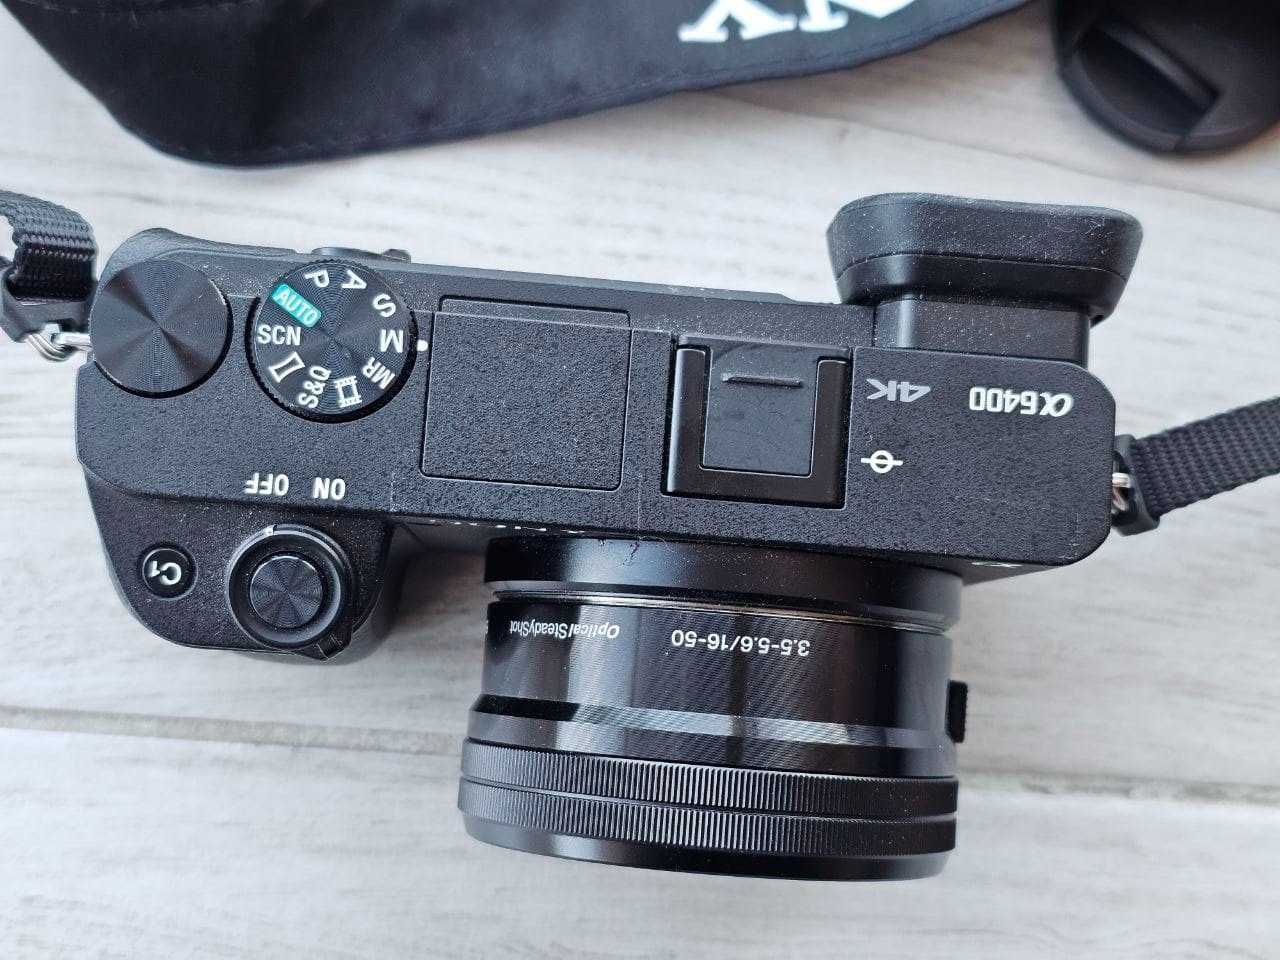 Sony Alpha 6400 camera